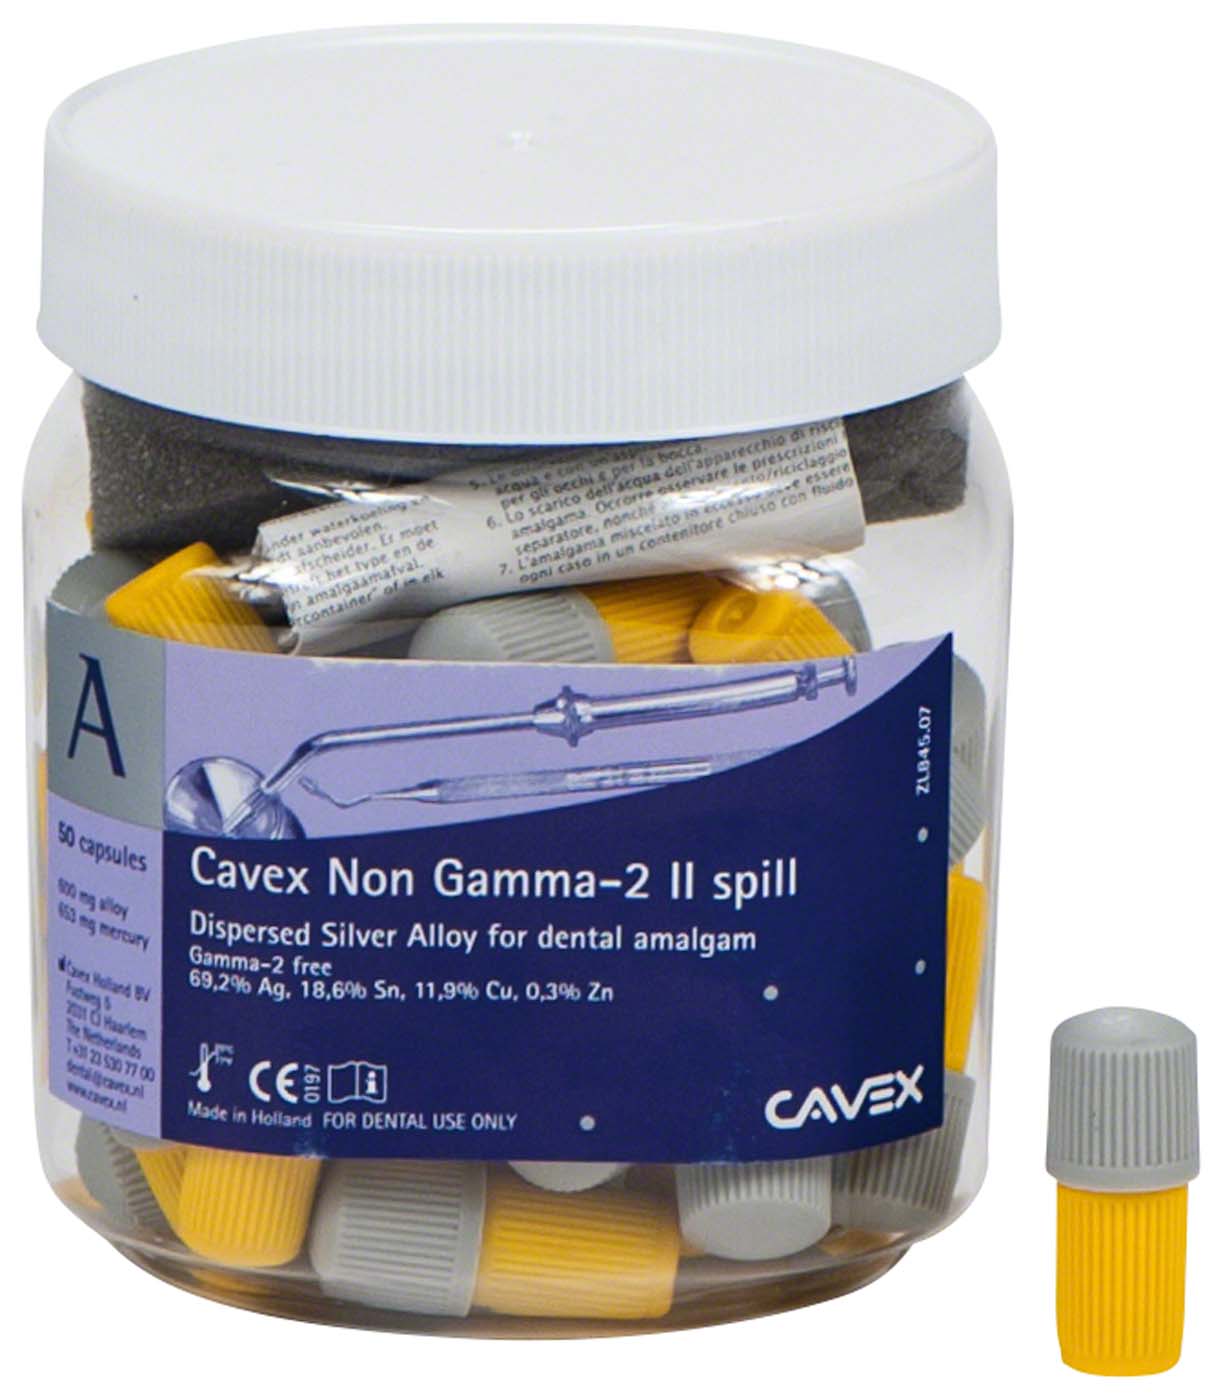 Cavex Non Gamma-2 Cavex